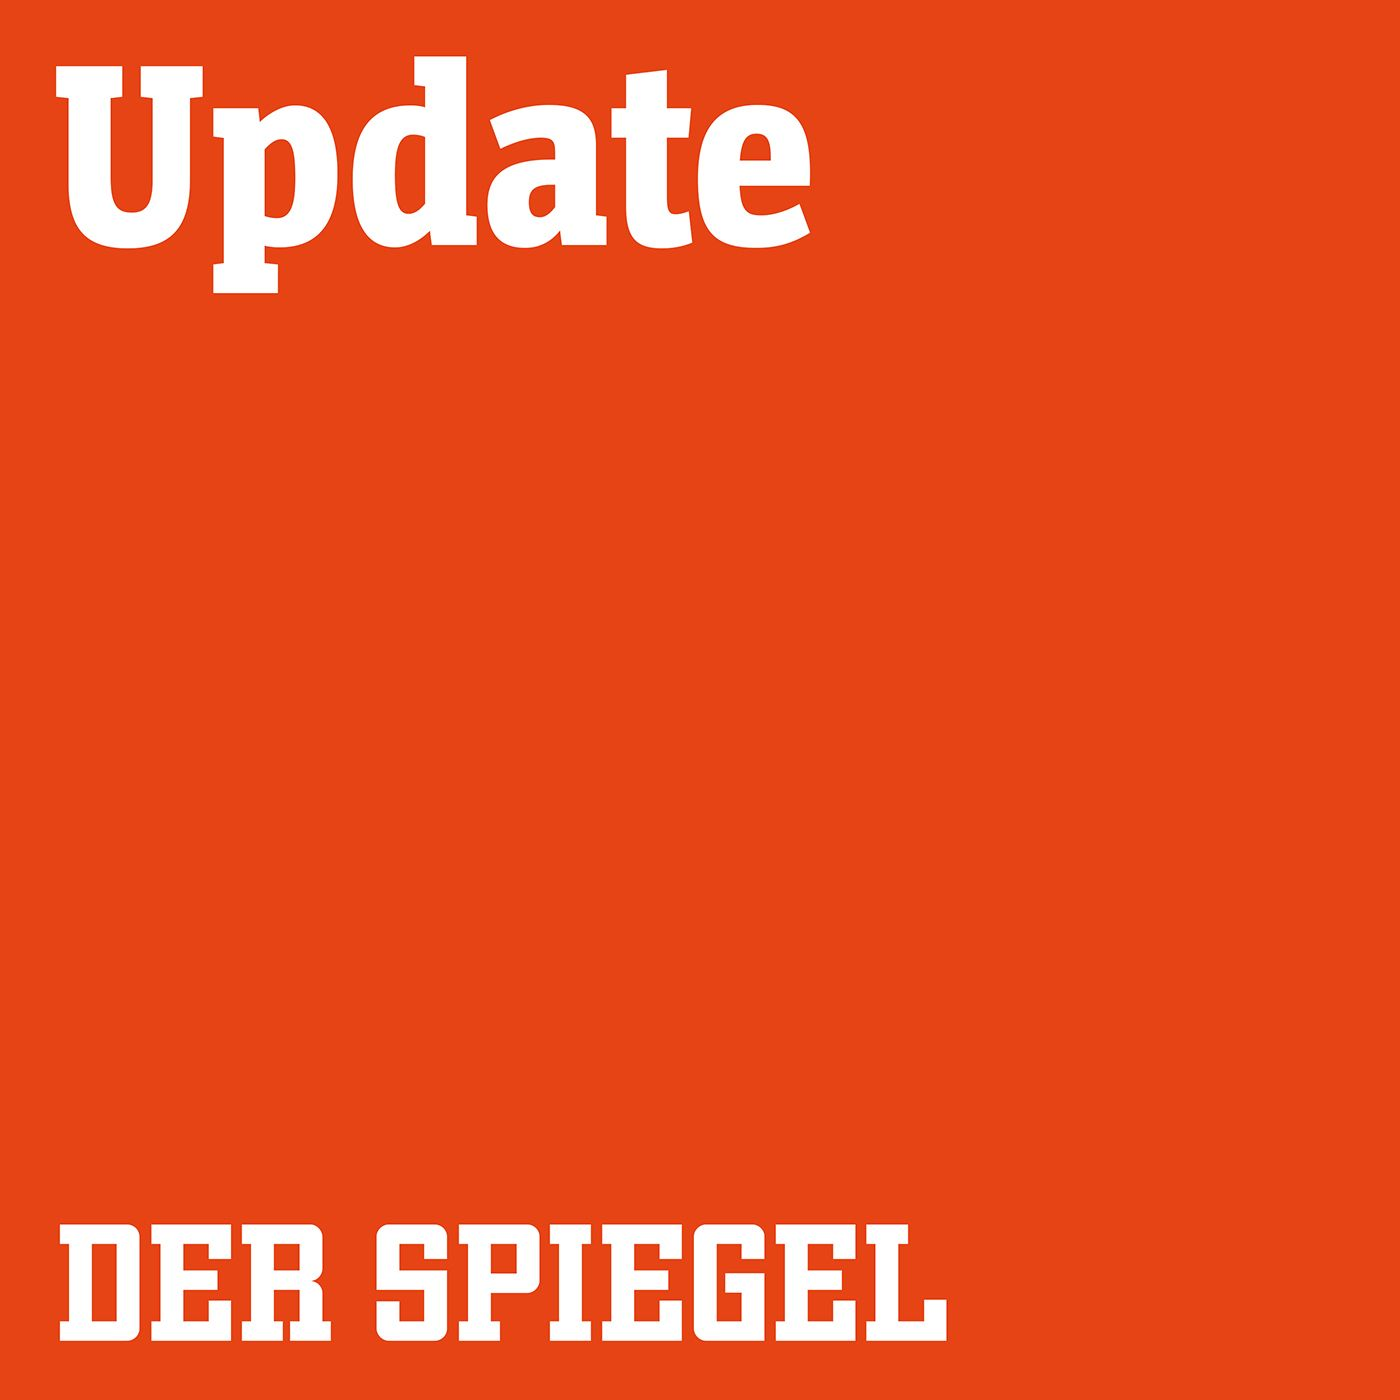 31.08. am Morgen: Polizeipanne vor Reichstag, Gewalt auf US-Straßen, Steve Bannon vor Gericht